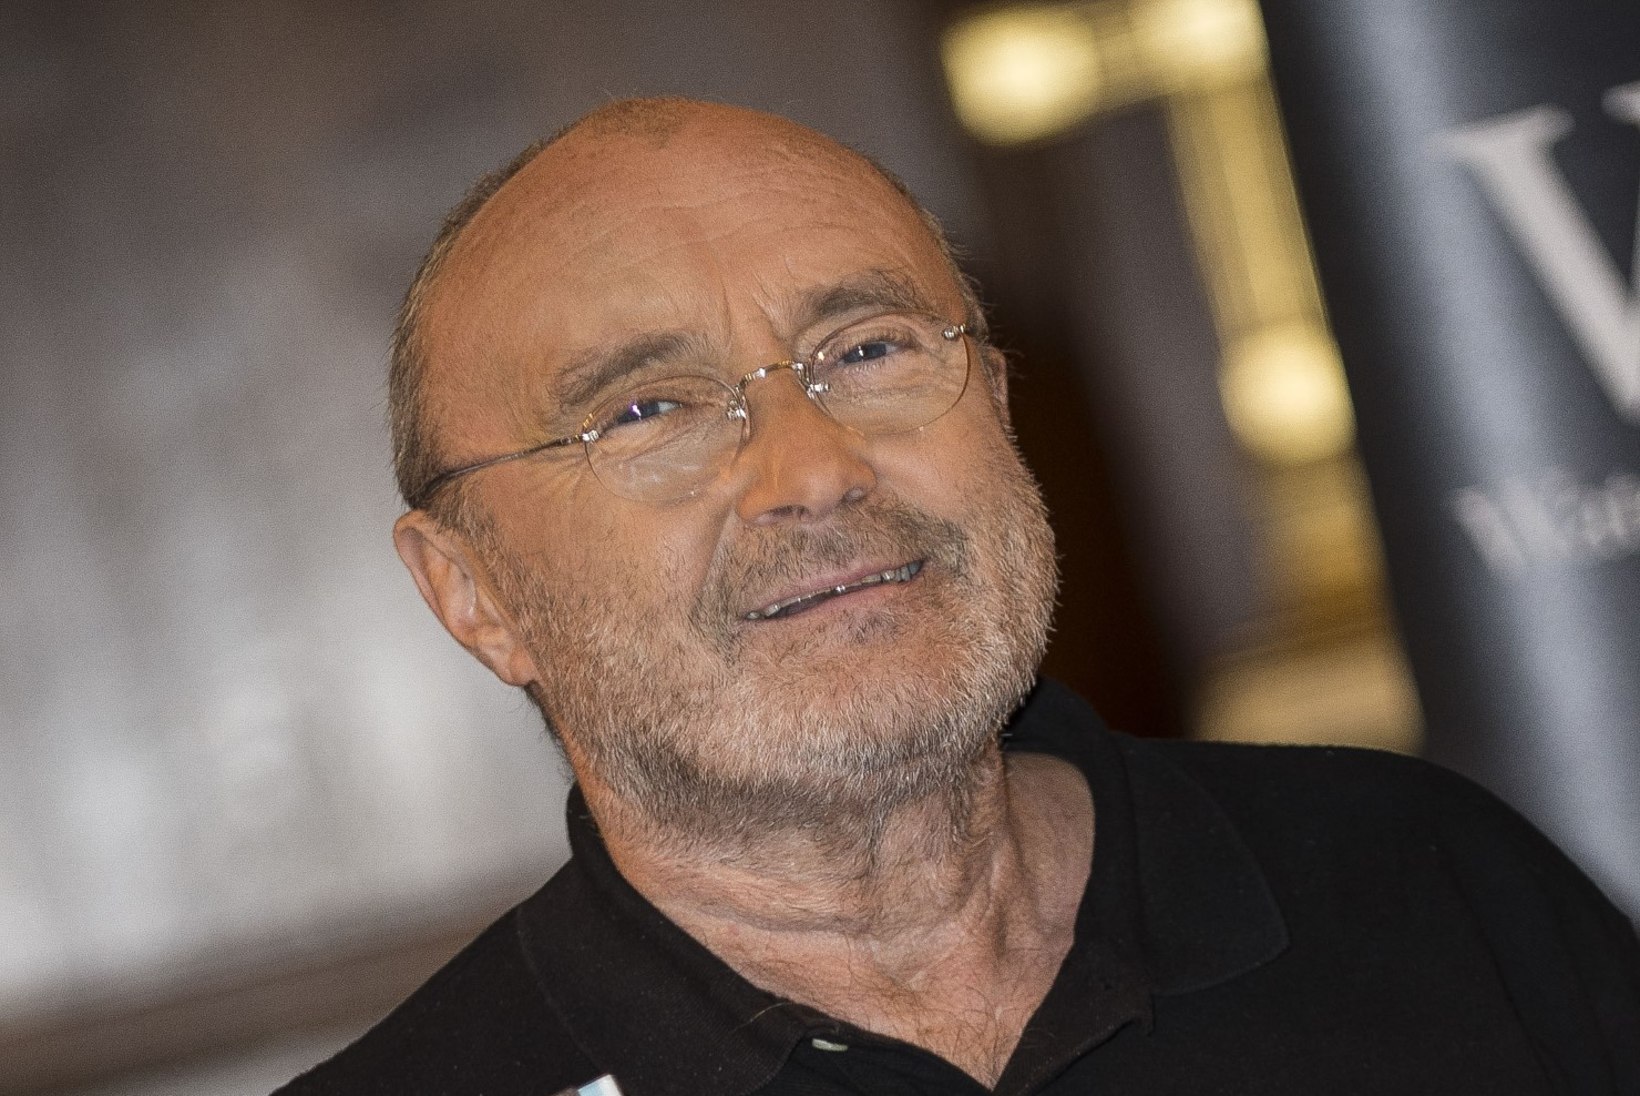 Phil Collinsi eksnaine: "Phil pettis mind, kuid süüdistab mind abielu purunemises!"